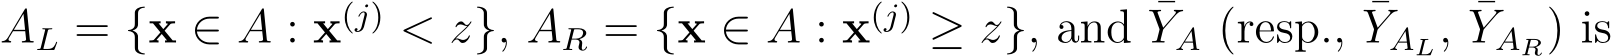  AL = {x ∈ A : x(j) < z}, AR = {x ∈ A : x(j) ≥ z}, and ¯YA (resp., ¯YAL, ¯YAR) is